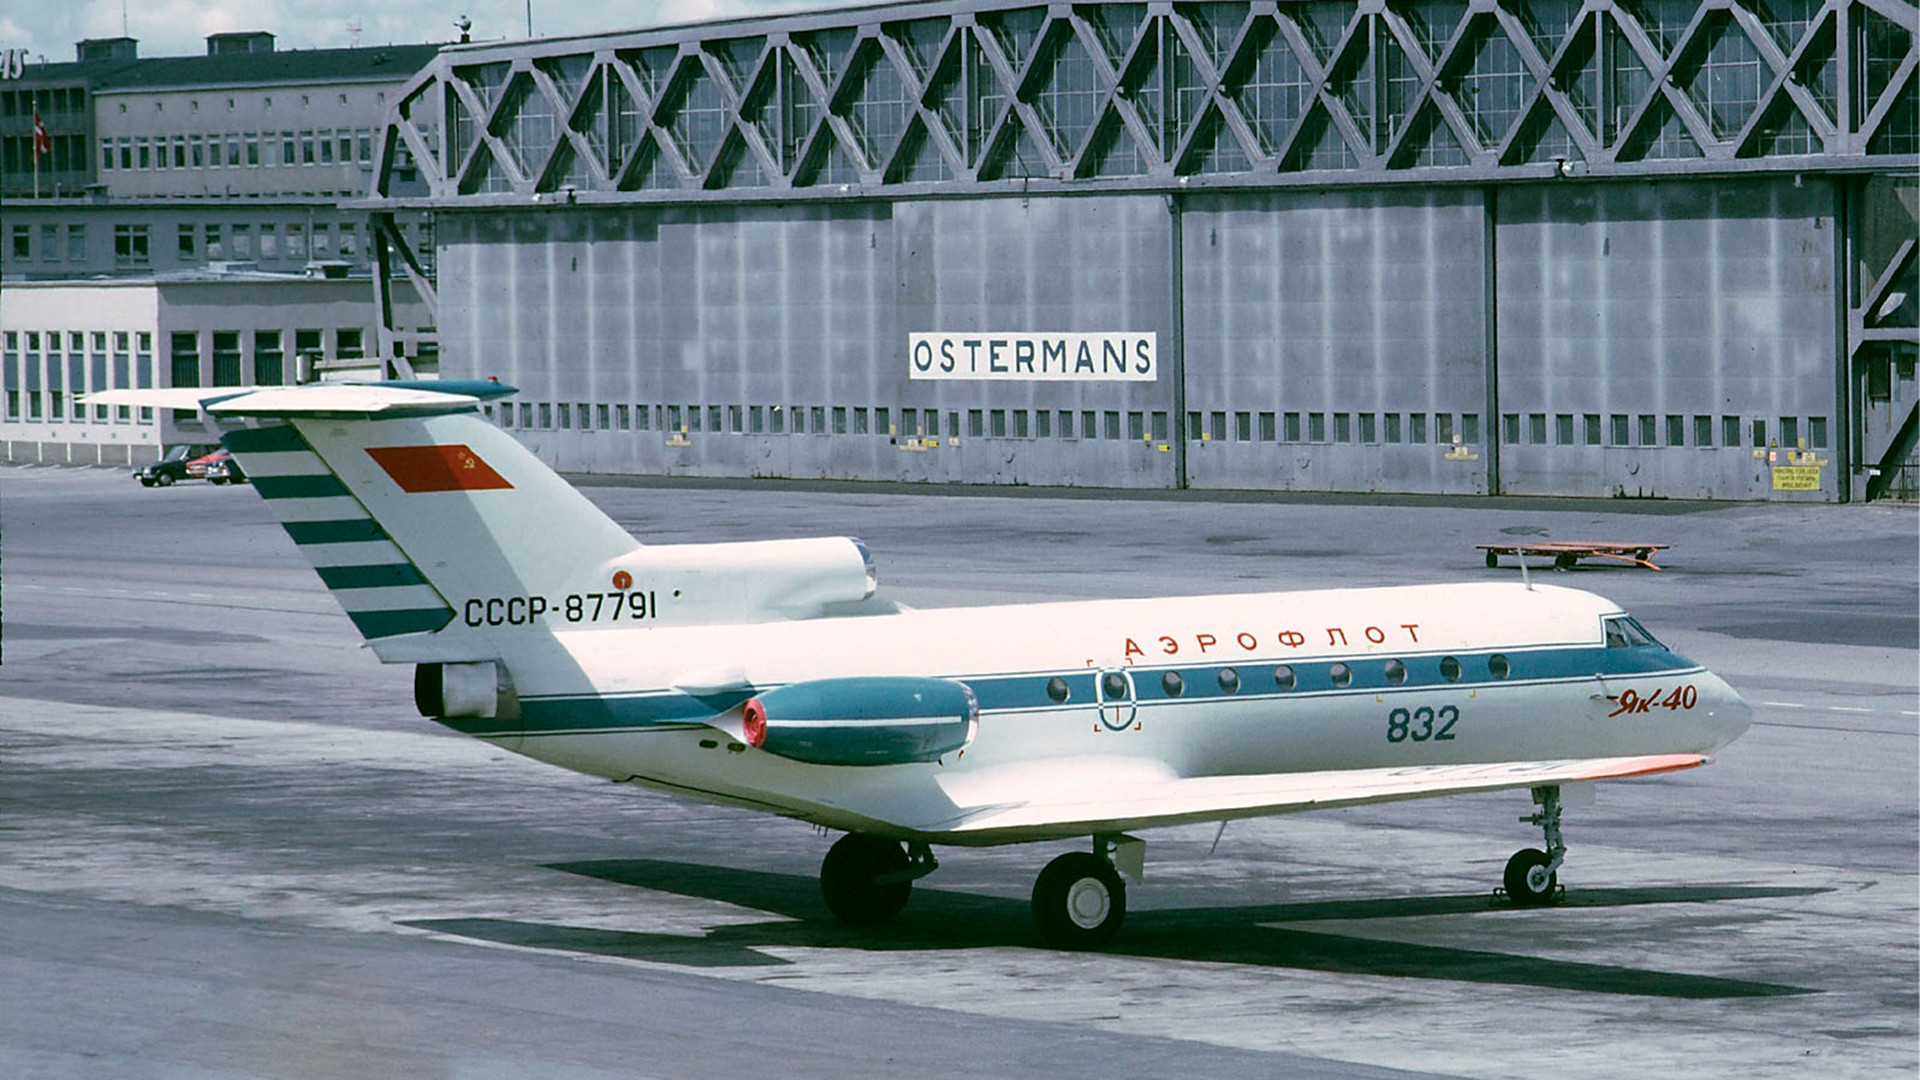 Jak-40 sovjetskega letalskega prevoznika Aeroflot na stockholmskem letališču Bromma